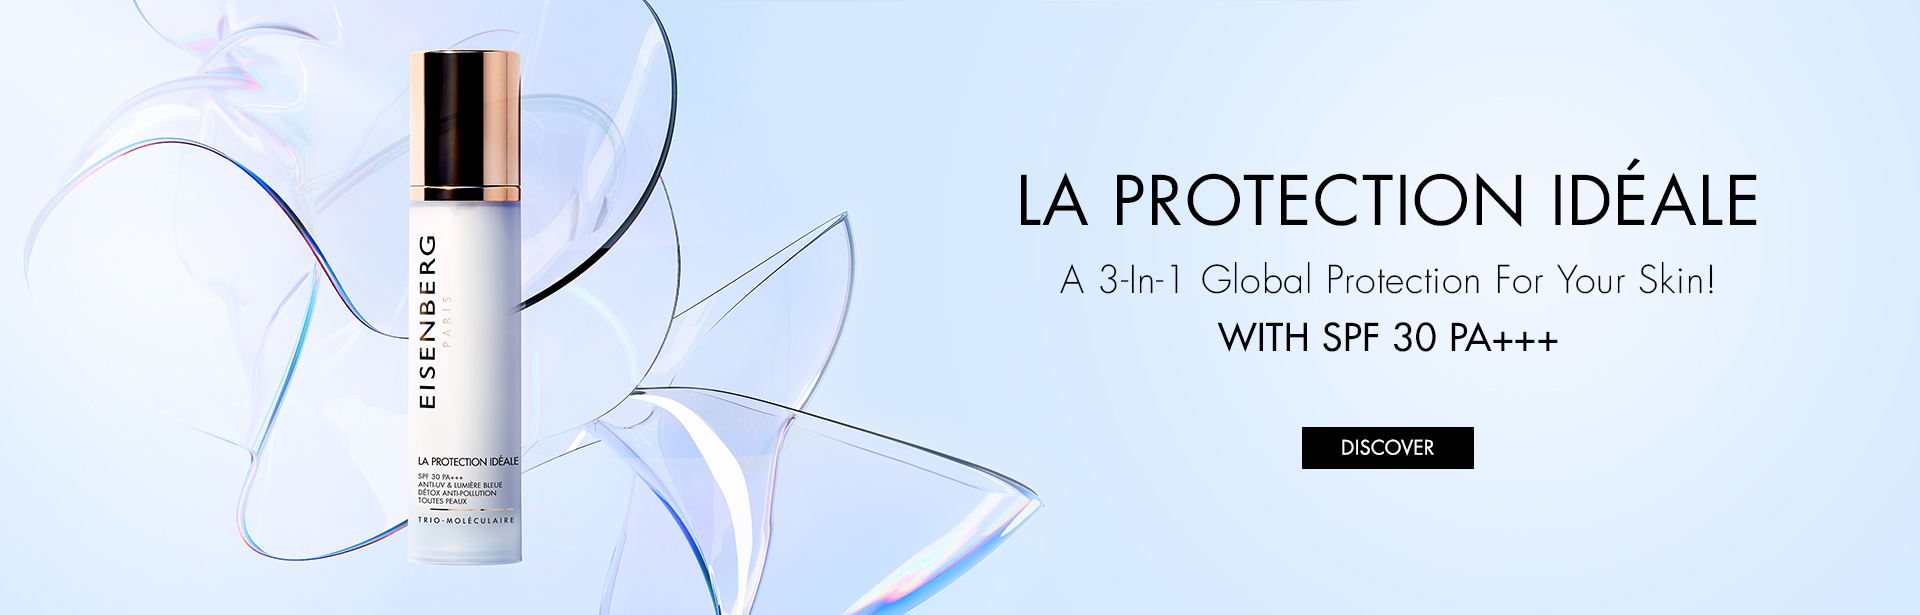 DIAPO_LA_PROTECTION_IDEALE - US